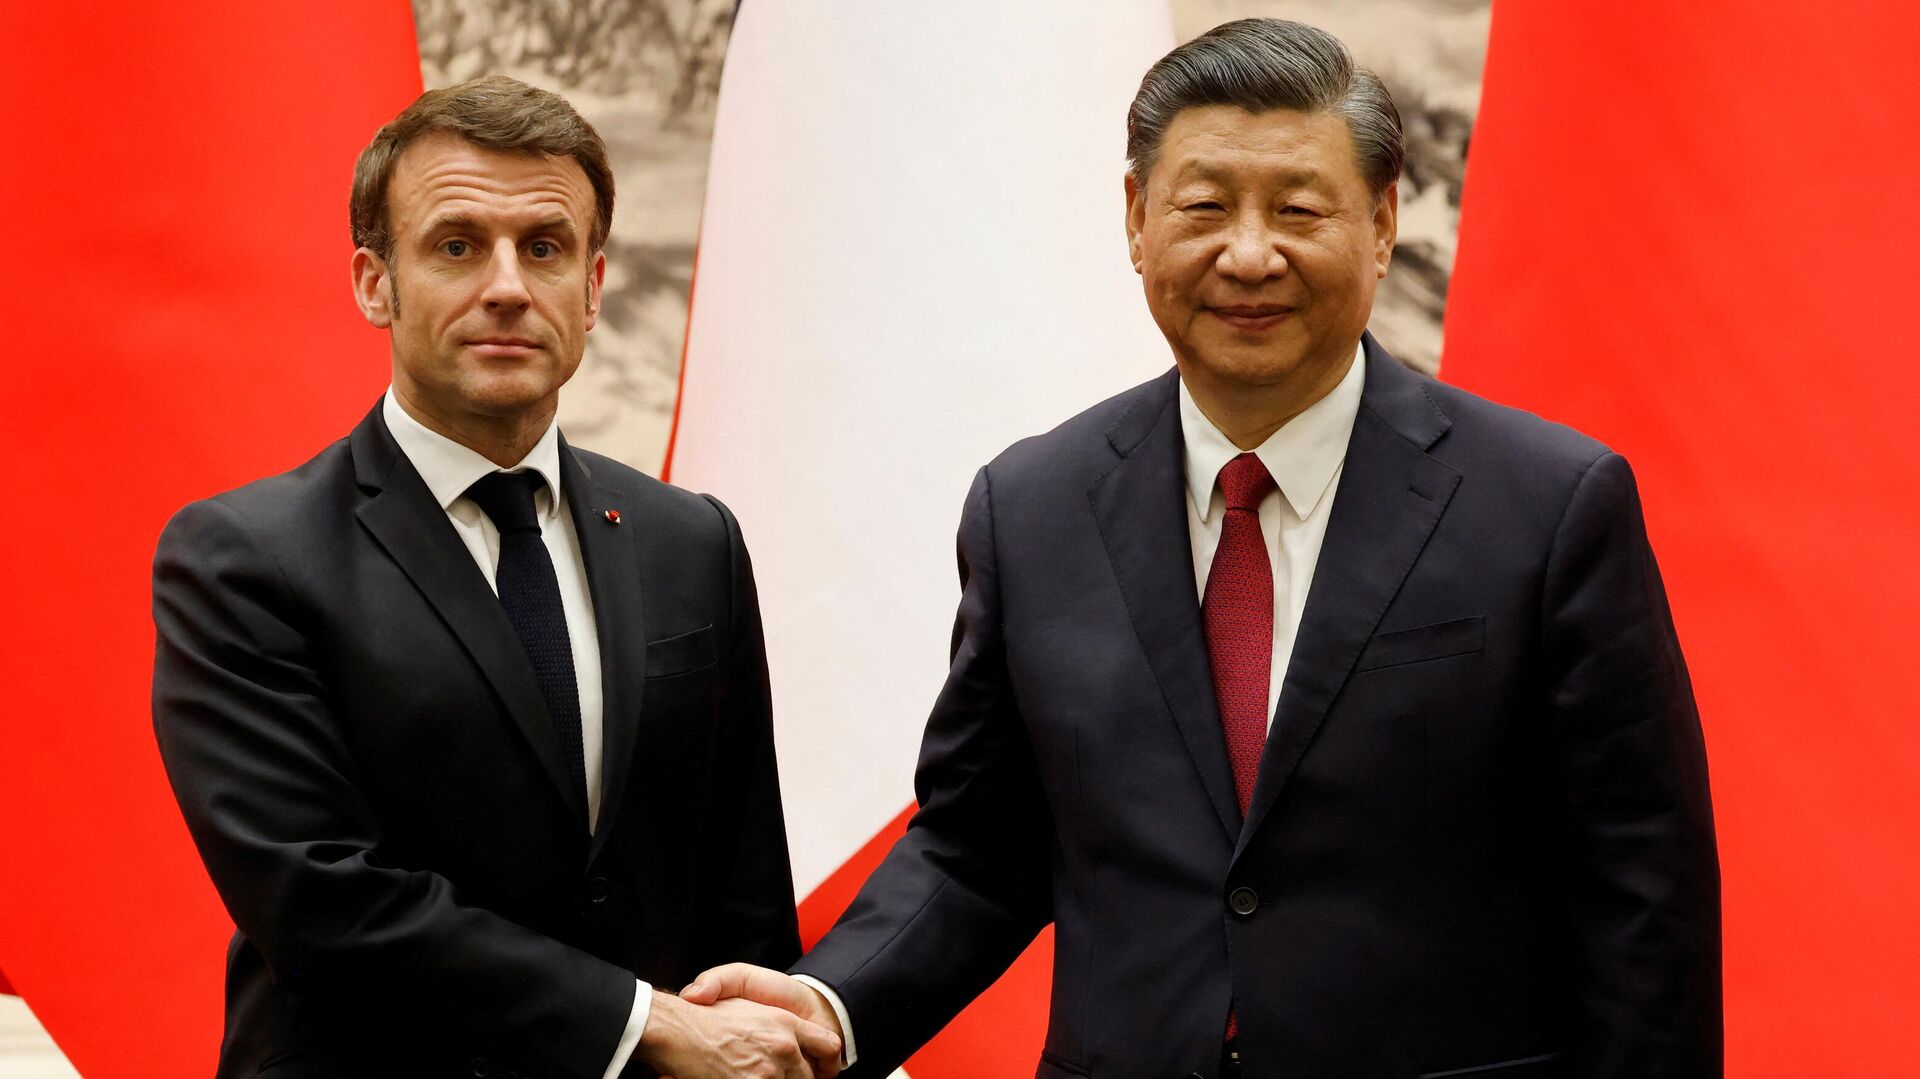 Европейское турне Си Цзиньпина: Китай сеет семена раздора между Европой и США